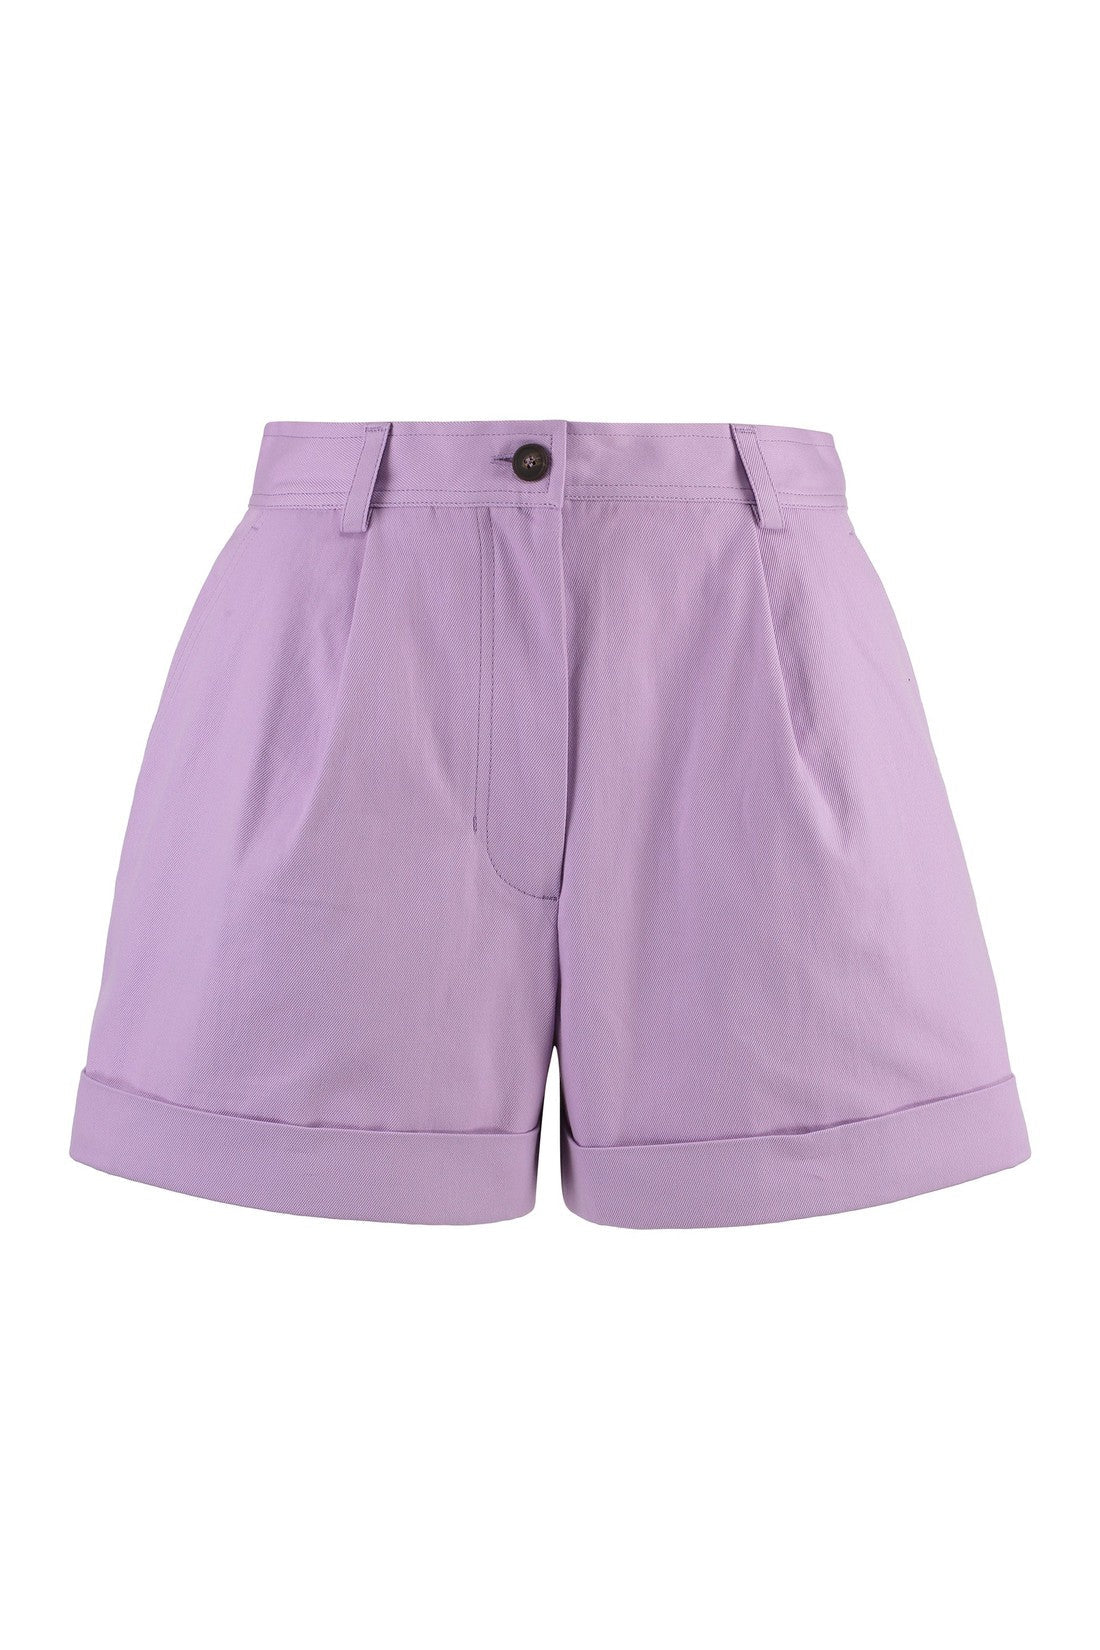 Maison Kitsuné-OUTLET-SALE-Cotton shorts-ARCHIVIST